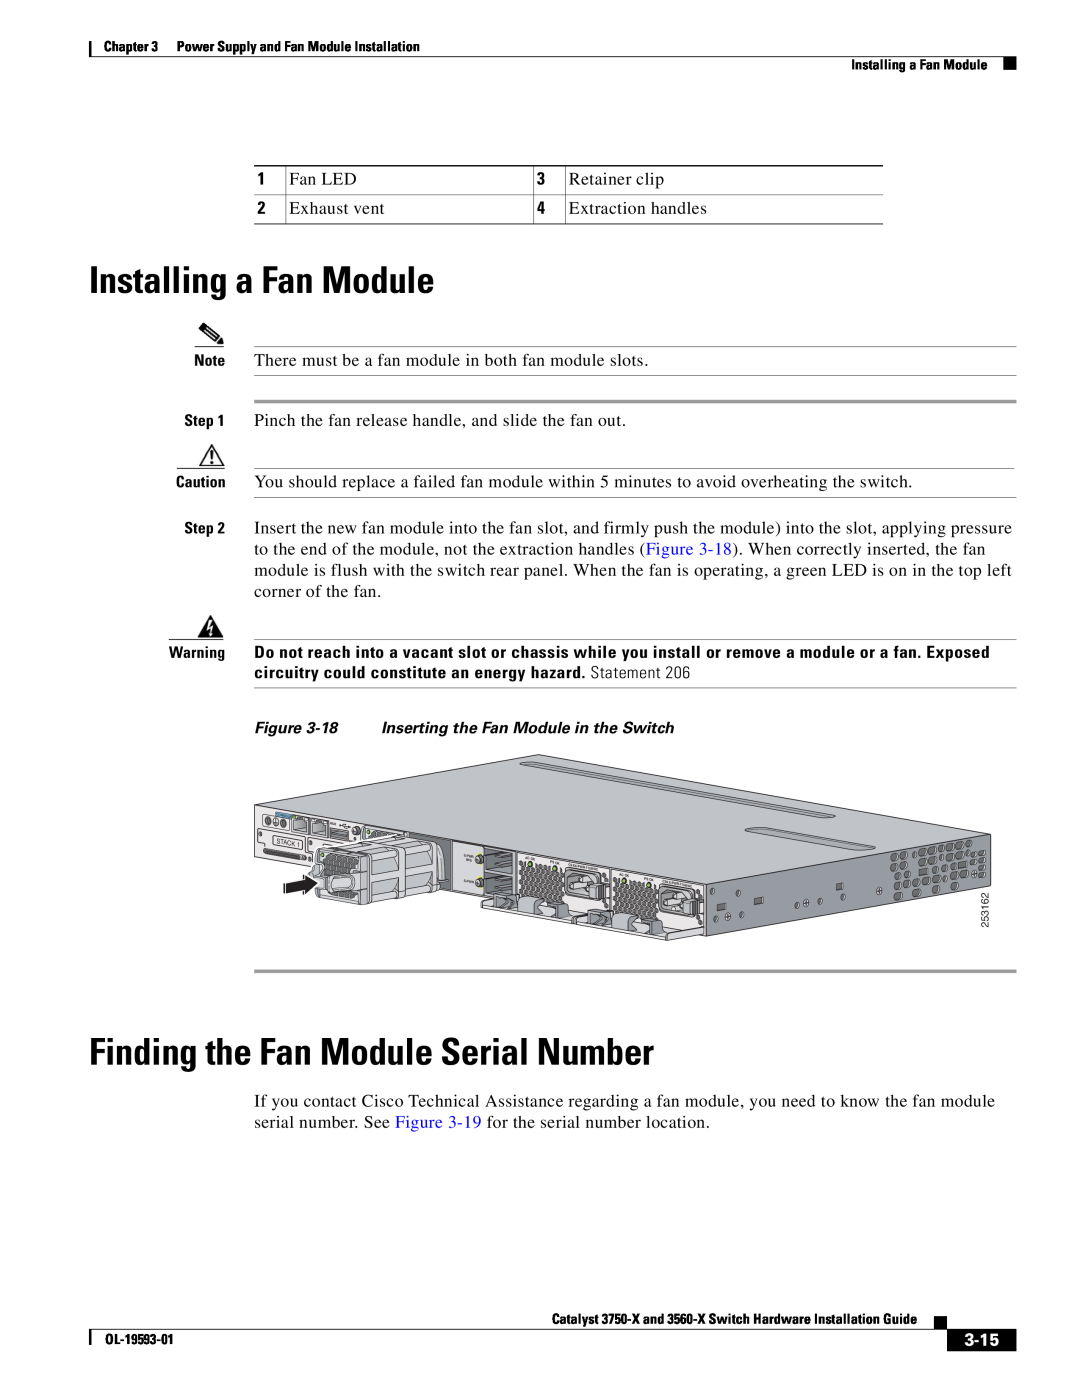 Cisco Systems 3560-X, 3750-X manual Installing a Fan Module, Finding the Fan Module Serial Number, 3-15 